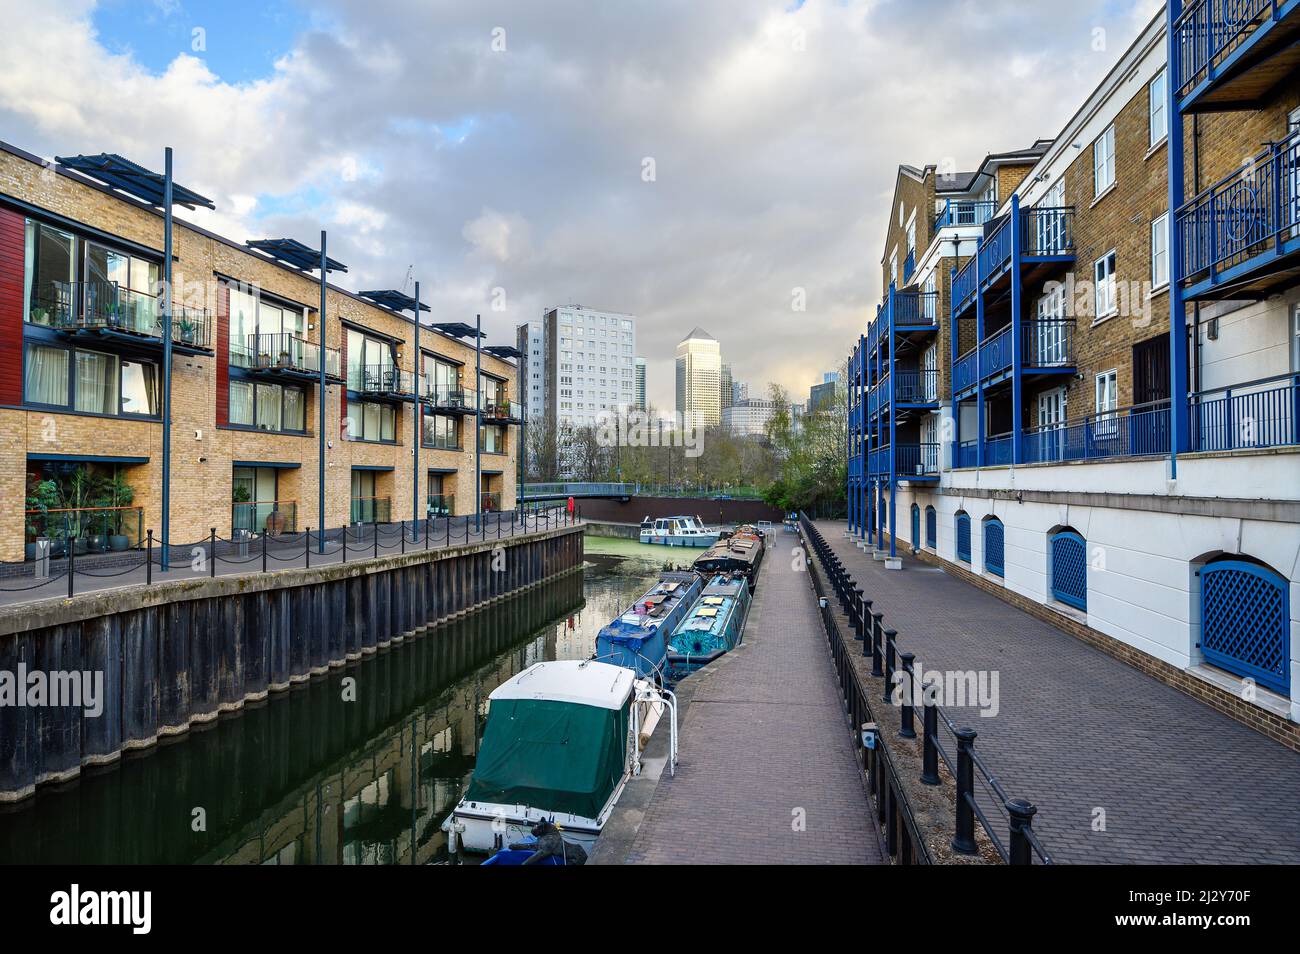 Limehouse, Londres, Royaume-Uni: Bateaux amarrés sur un canal près de Limehouse Basin, une marina dans la région des docklands de l'est de Londres. Banque D'Images